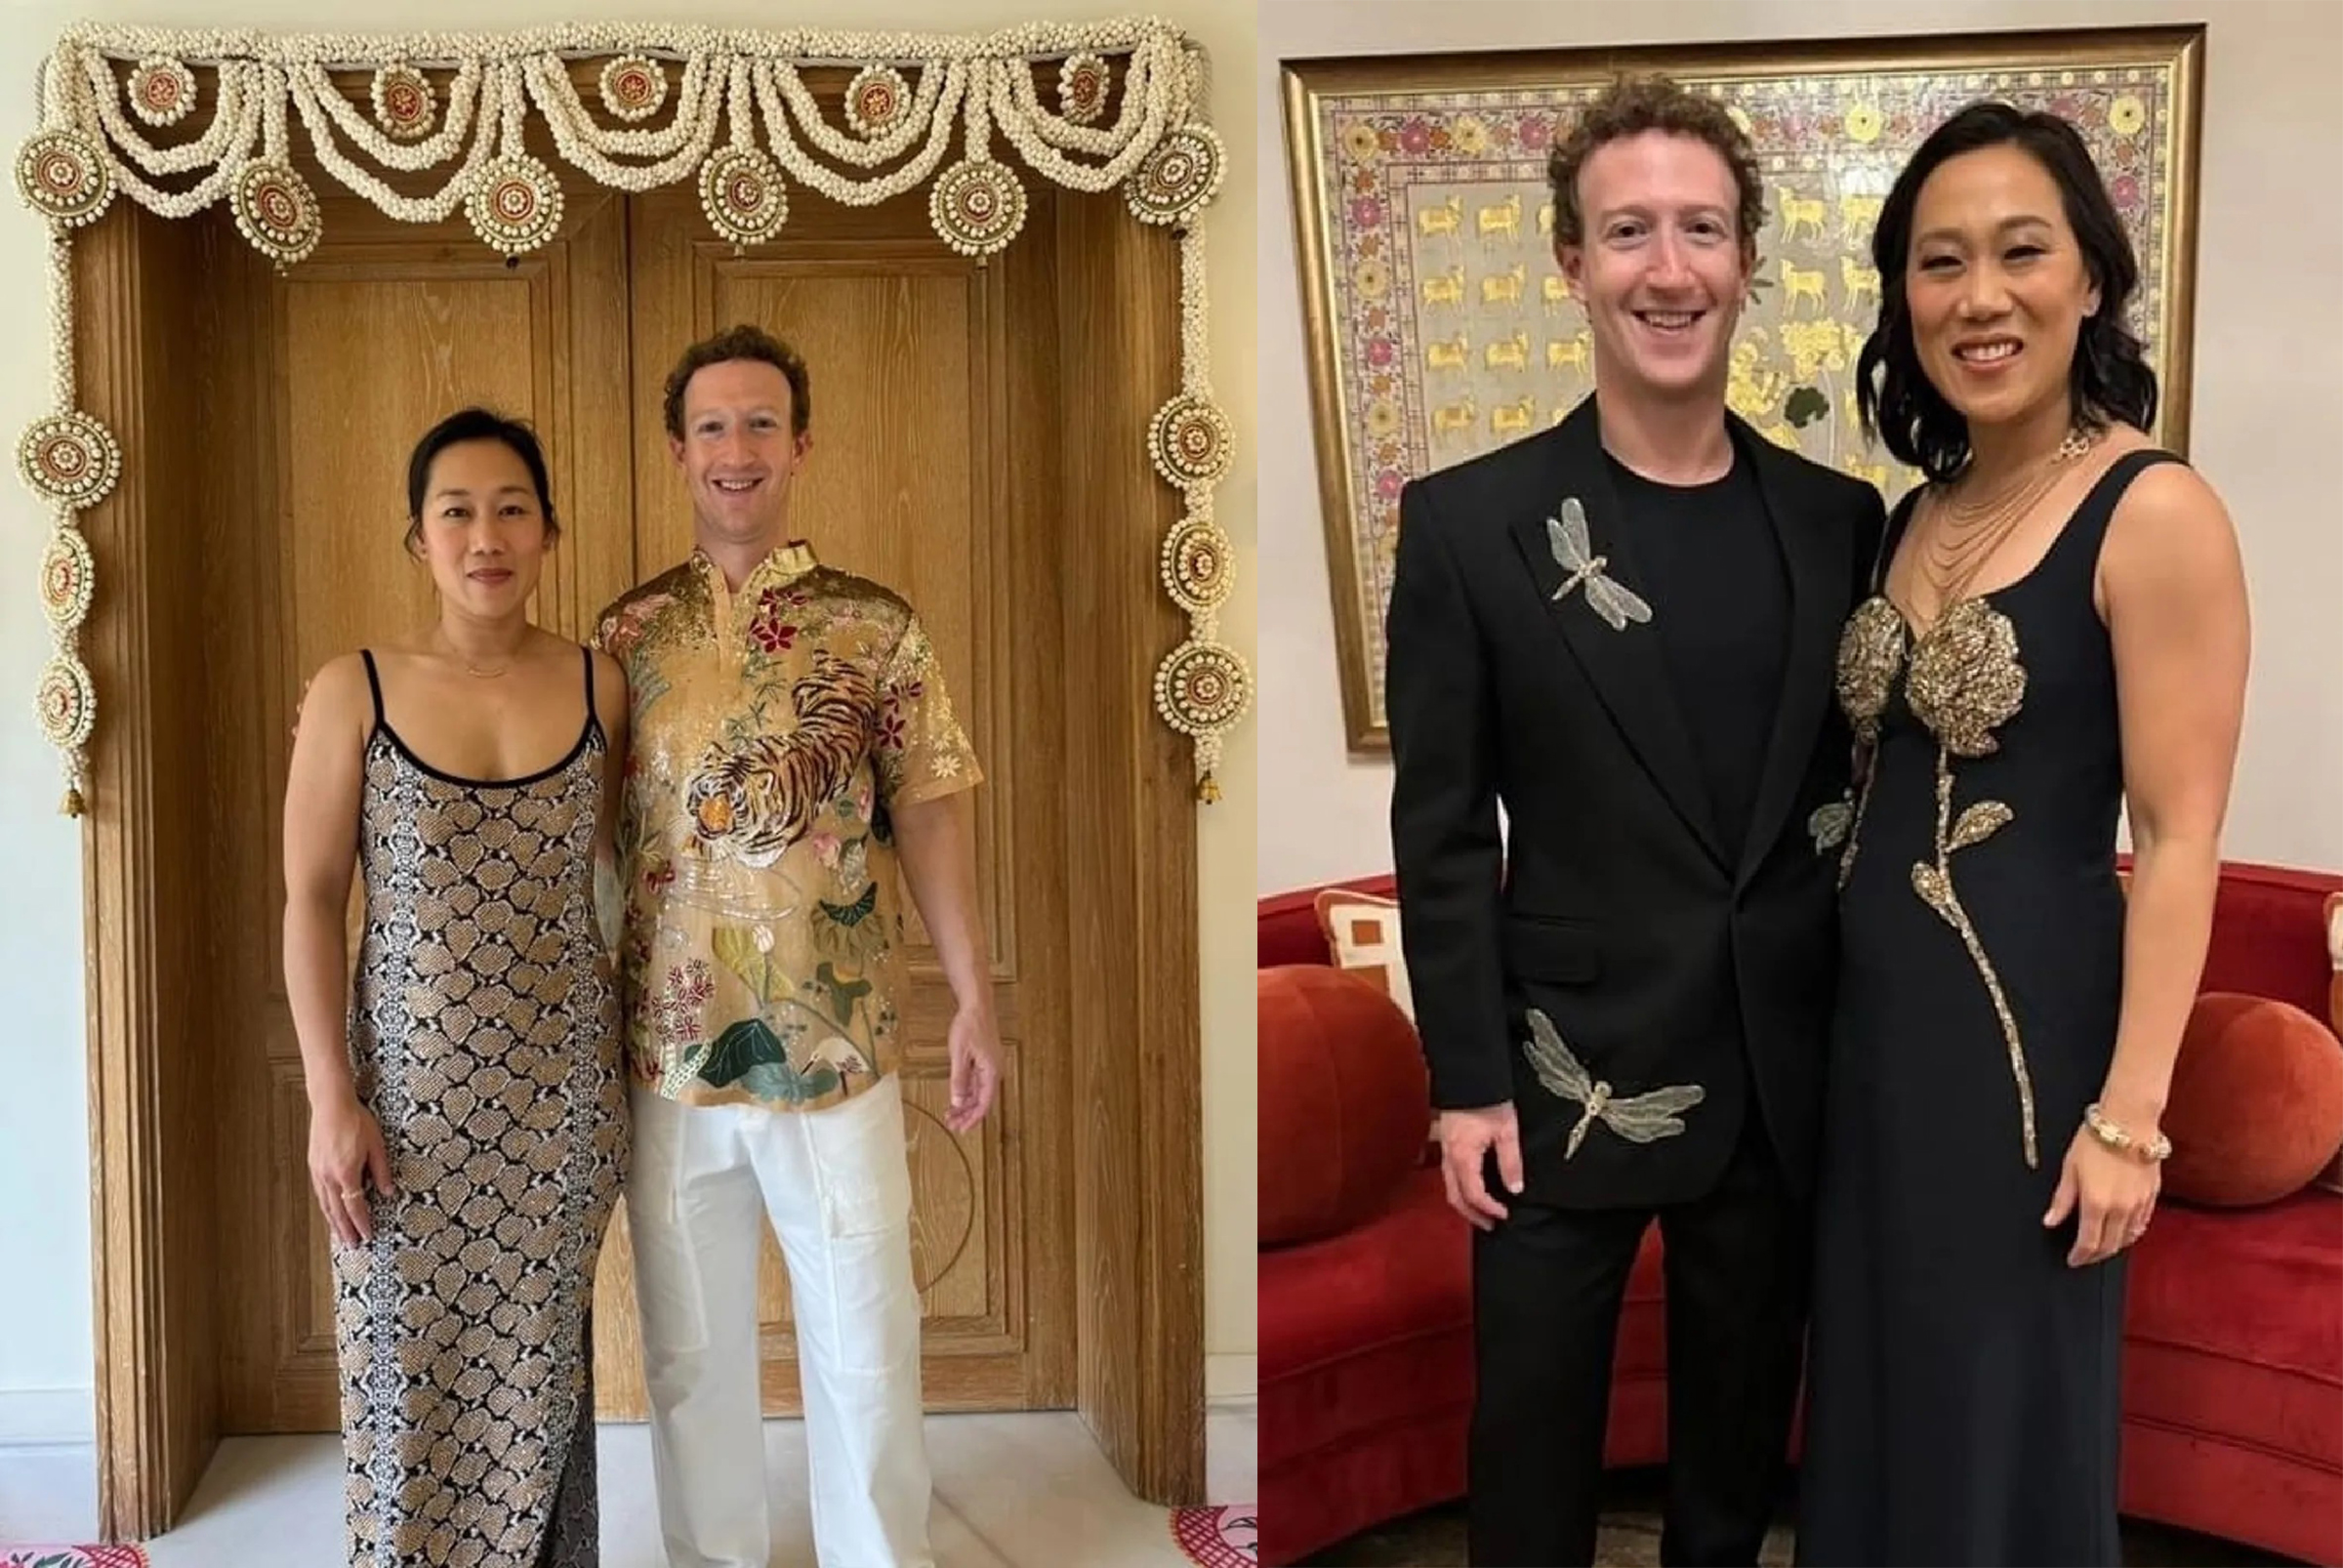 Một số sự kiện yêu cầu trang phục trang trọng hơn, Zuckerberg mặc áo vest. Tuy nhiên, ông cũng không từ chối mặc các bộ đồ tùy theo bối cảnh. Chẳng hạn, trong buổi lễ trước đám cưới vào tháng 3 của gia đình giàu nhất Ấn Độ Ambani, Zuckerberg và vợ Priscilla Chan đều mặc đồ đen, điểm nhấn bằng họa tiết vàng và cài một con chuồn chuồn trên ve áo. Ảnh: zuck/Instagram